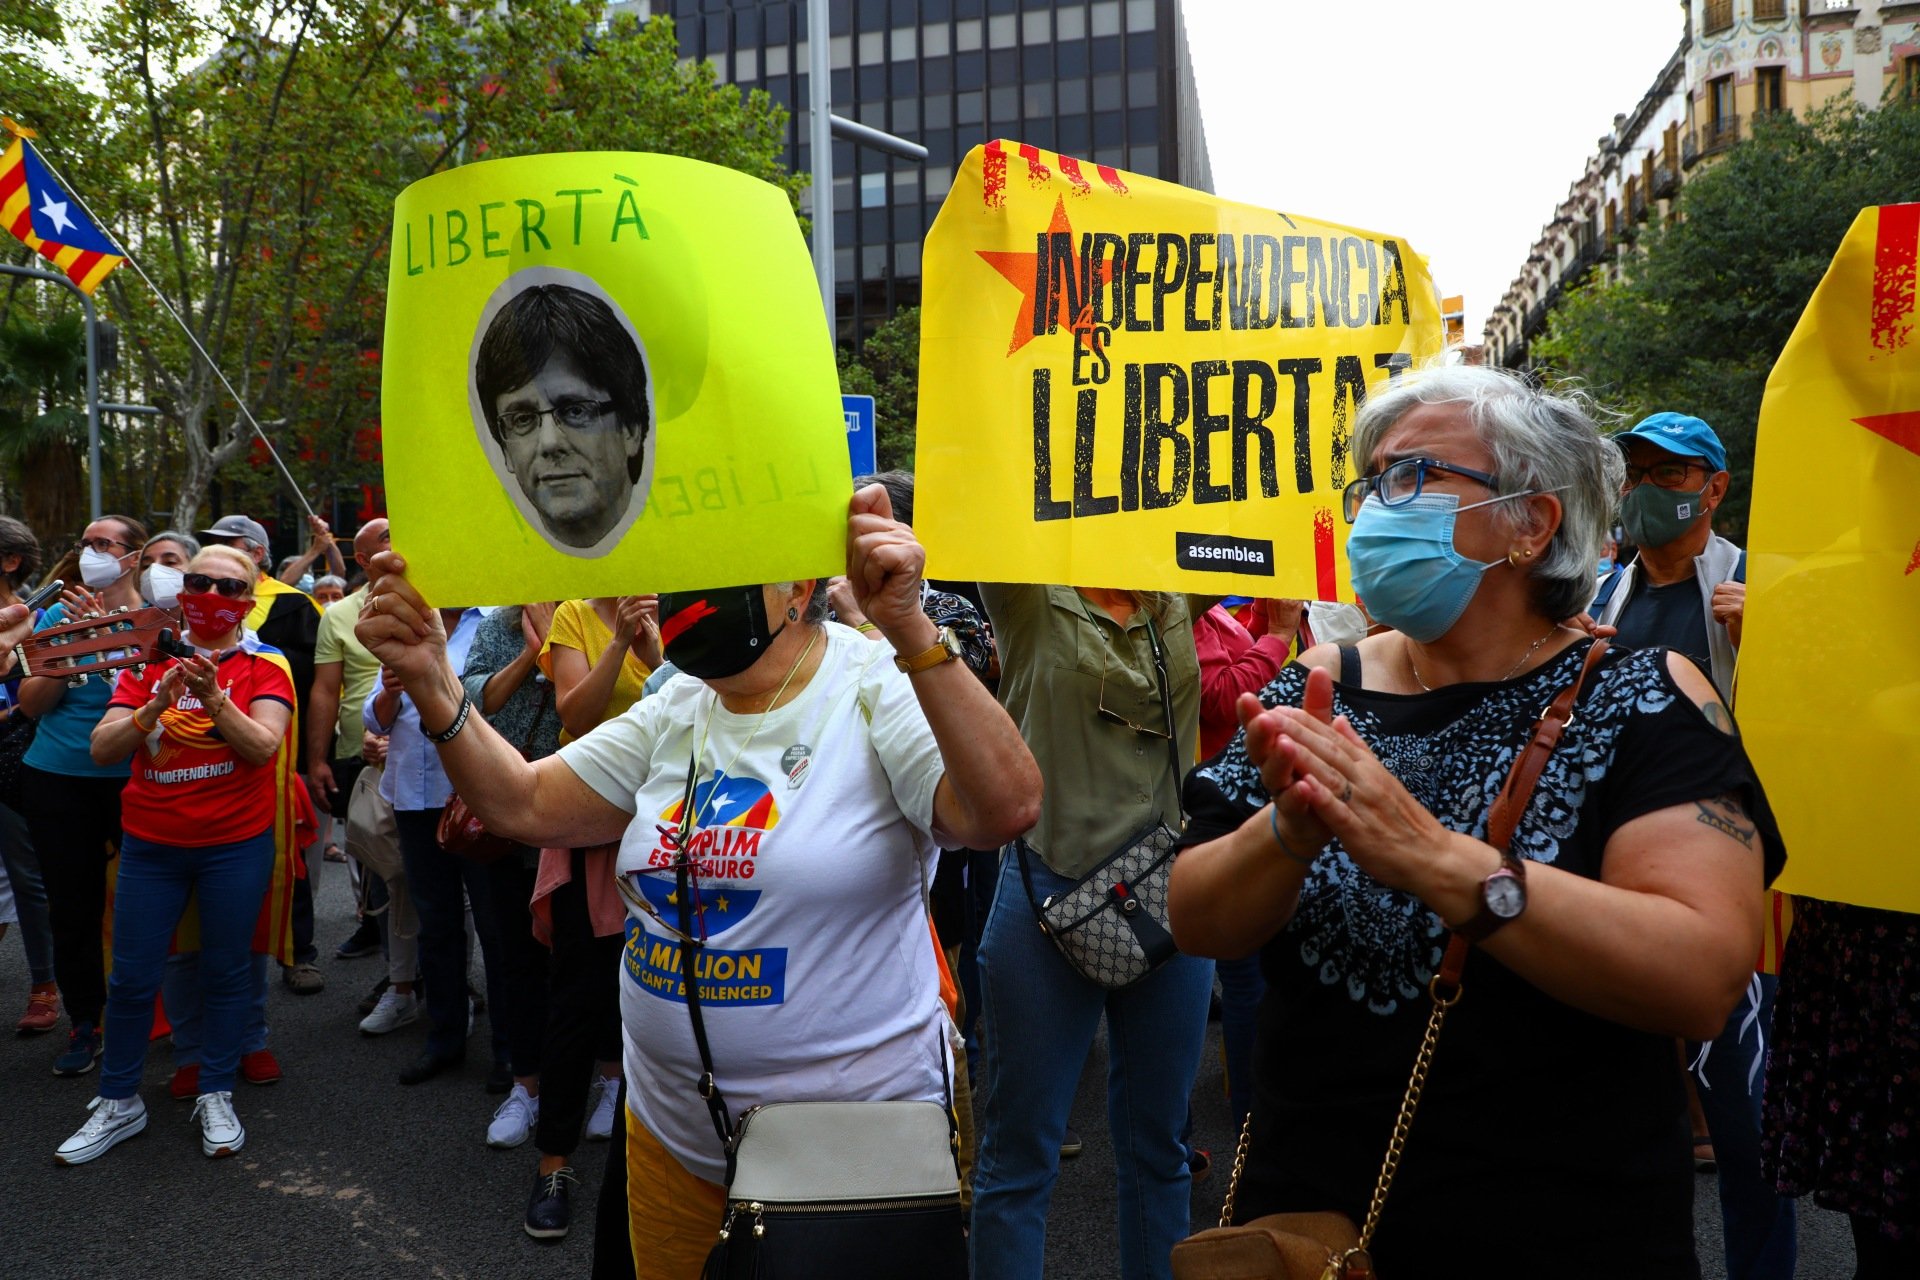 El independentismo estalla por la detención de Puigdemont: "Nuestro president"